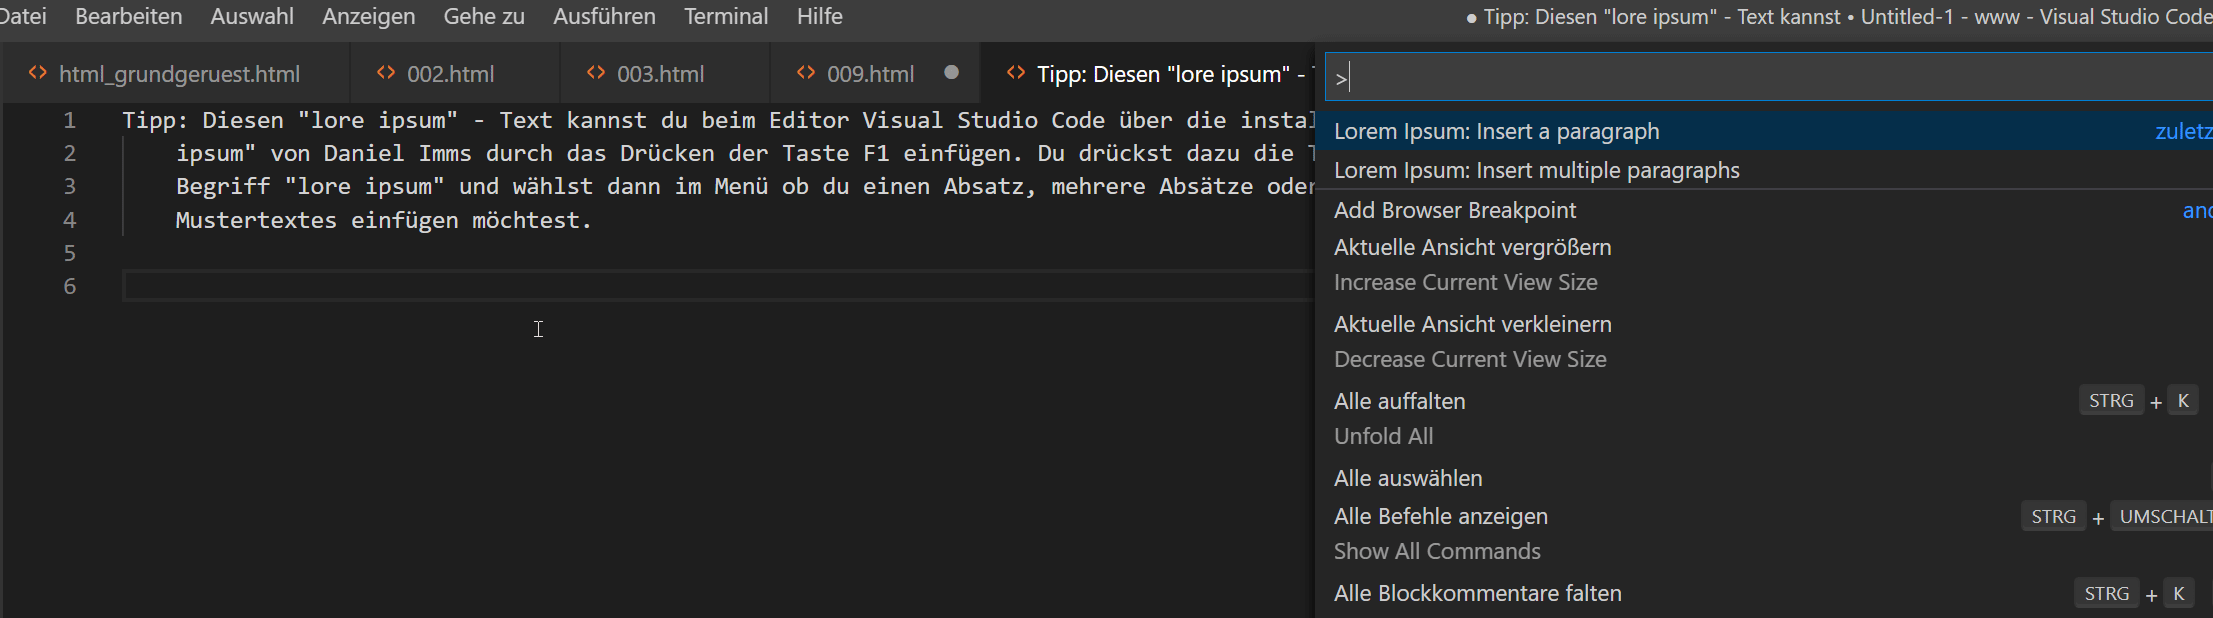 Lore Ipsum beim Editor Visual Studio Code einfügen